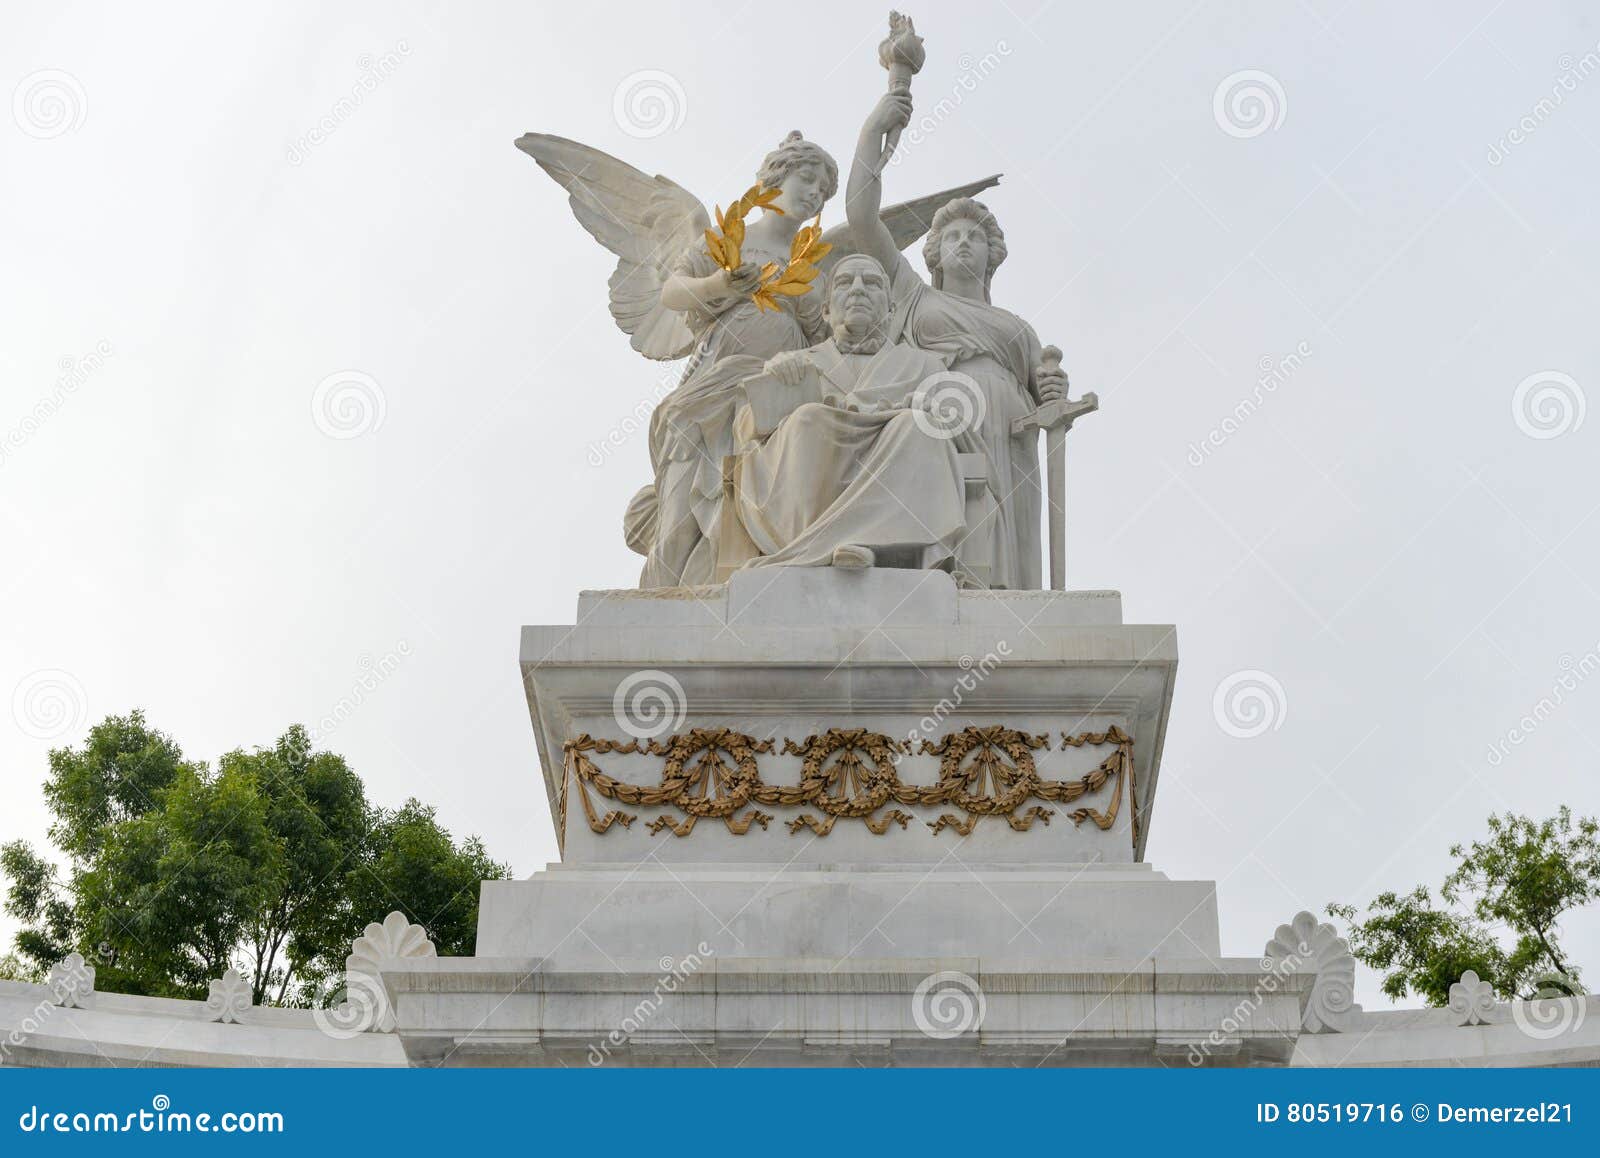 monument to benito juarez - mexico city